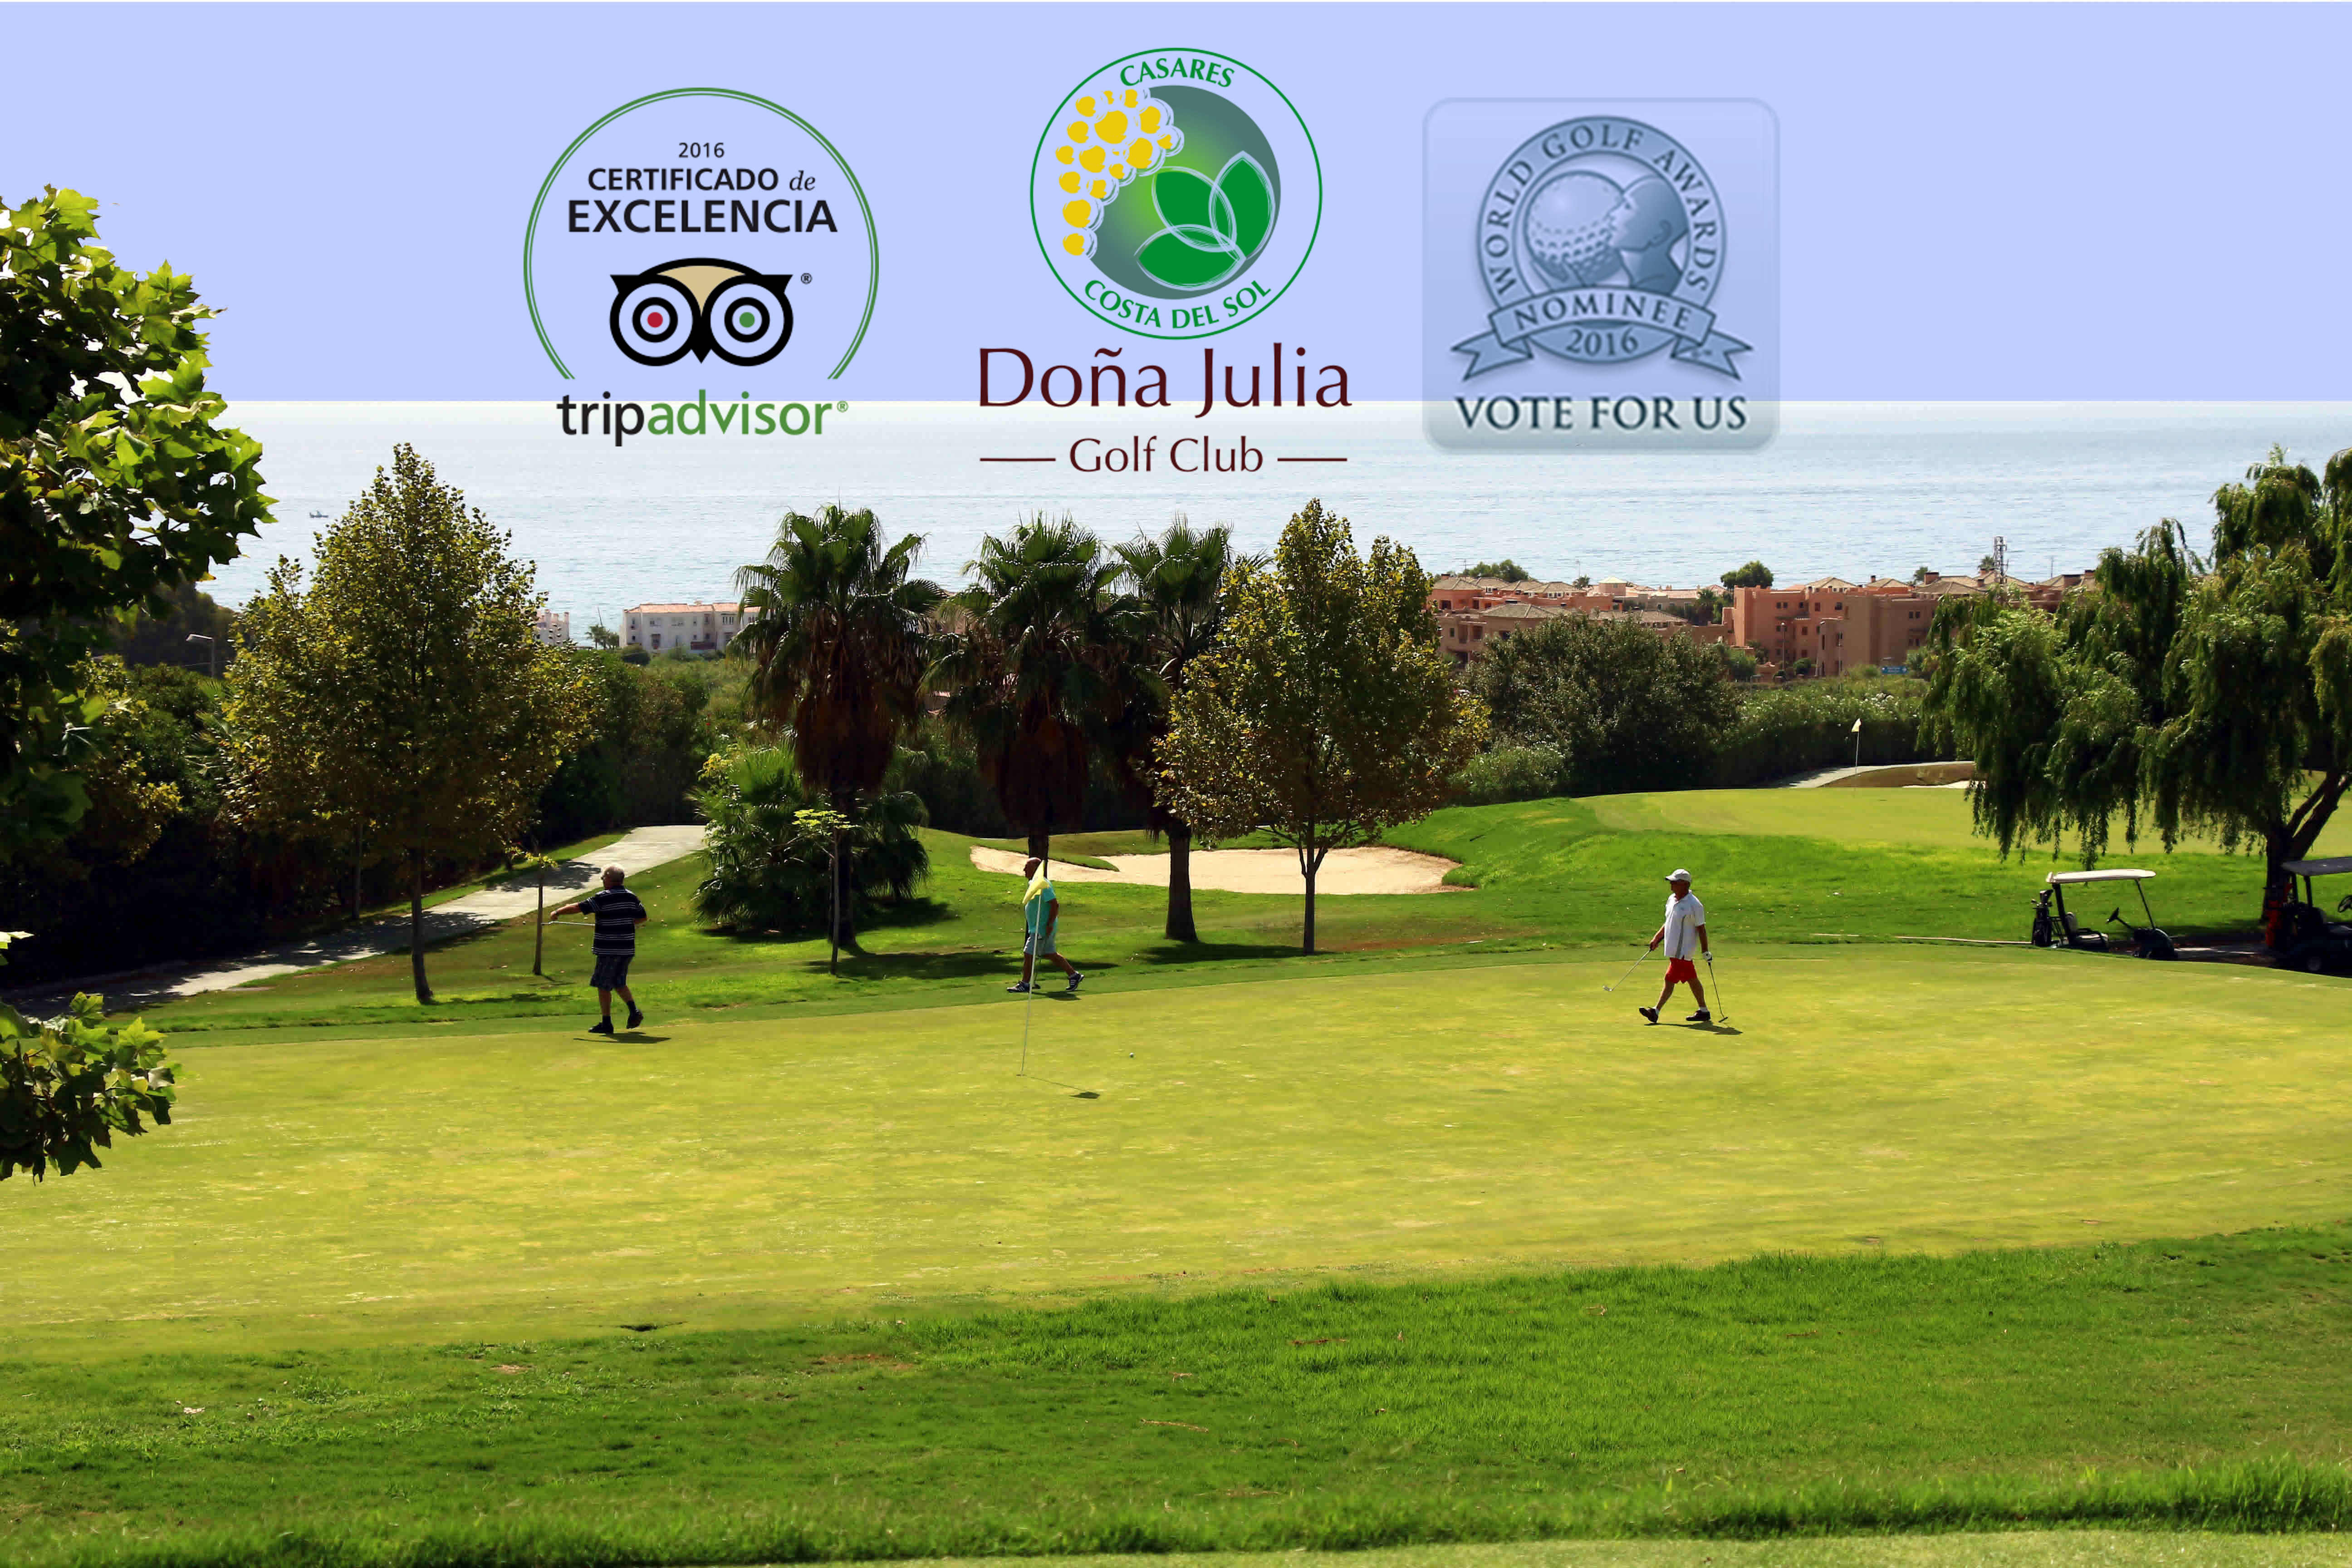 Tripadvisor brinda en el 2016 a Doña Julia Golf Club con el “Certificado de Excelencia” y World Golf Awards nomina como Mejor Campo de Golf de España